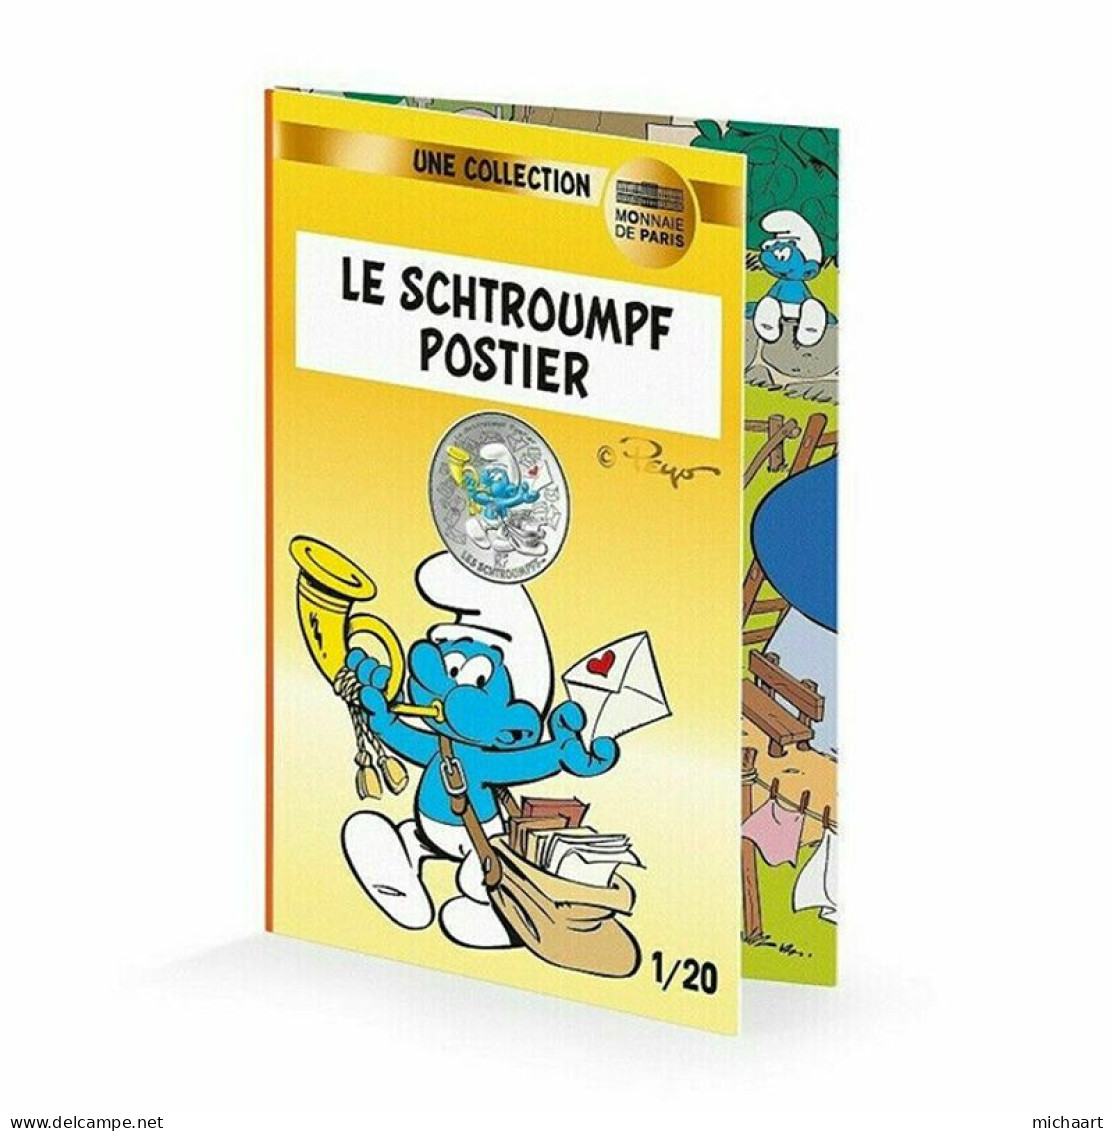 France 10 Euro Silver 2020 Postman The Smurfs Colored Coin Cartoon 00400 - Conmemorativos